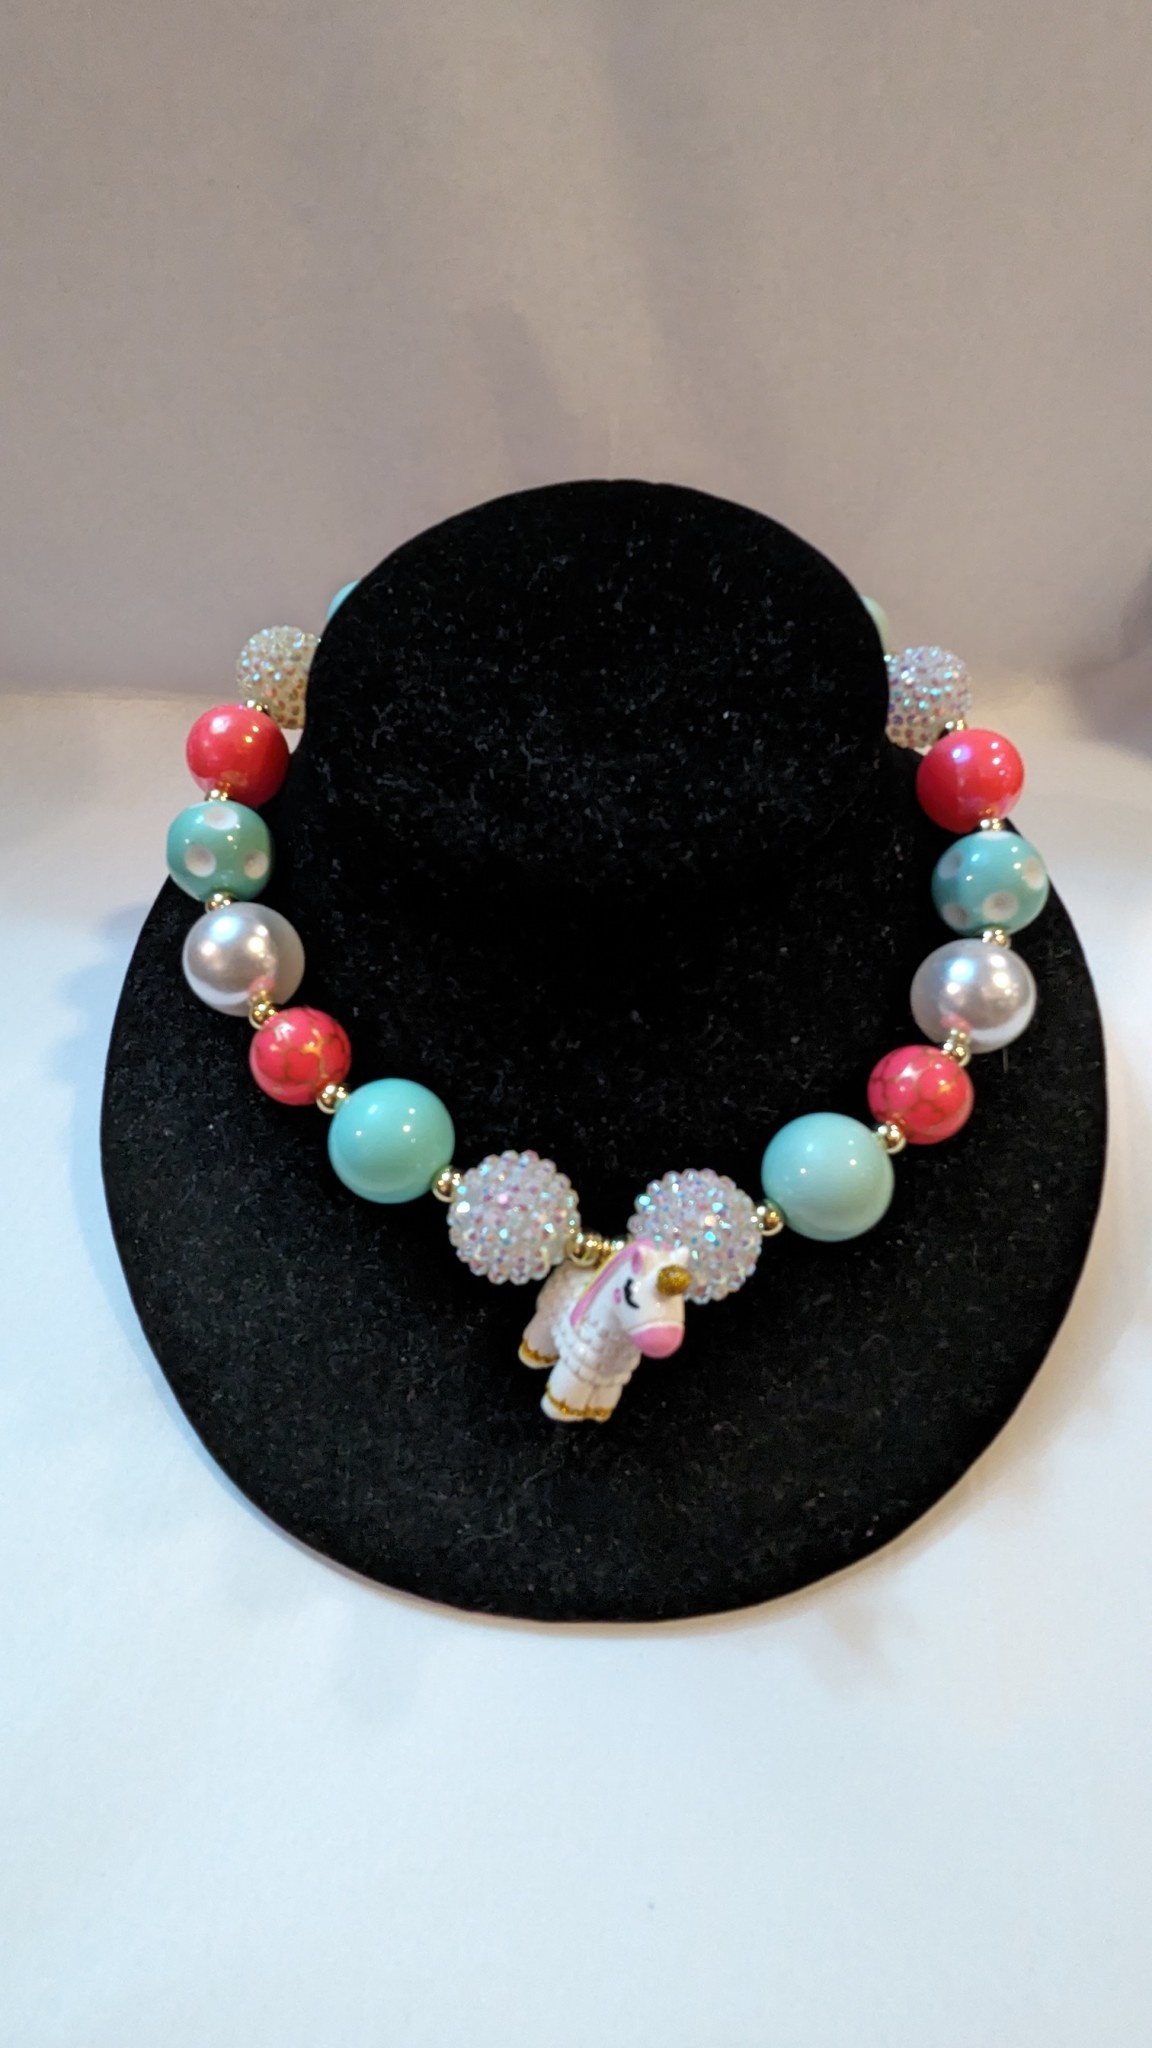 Pink Poppy Bubble Gum Necklace & Bracelet Set - Titley's Department Store